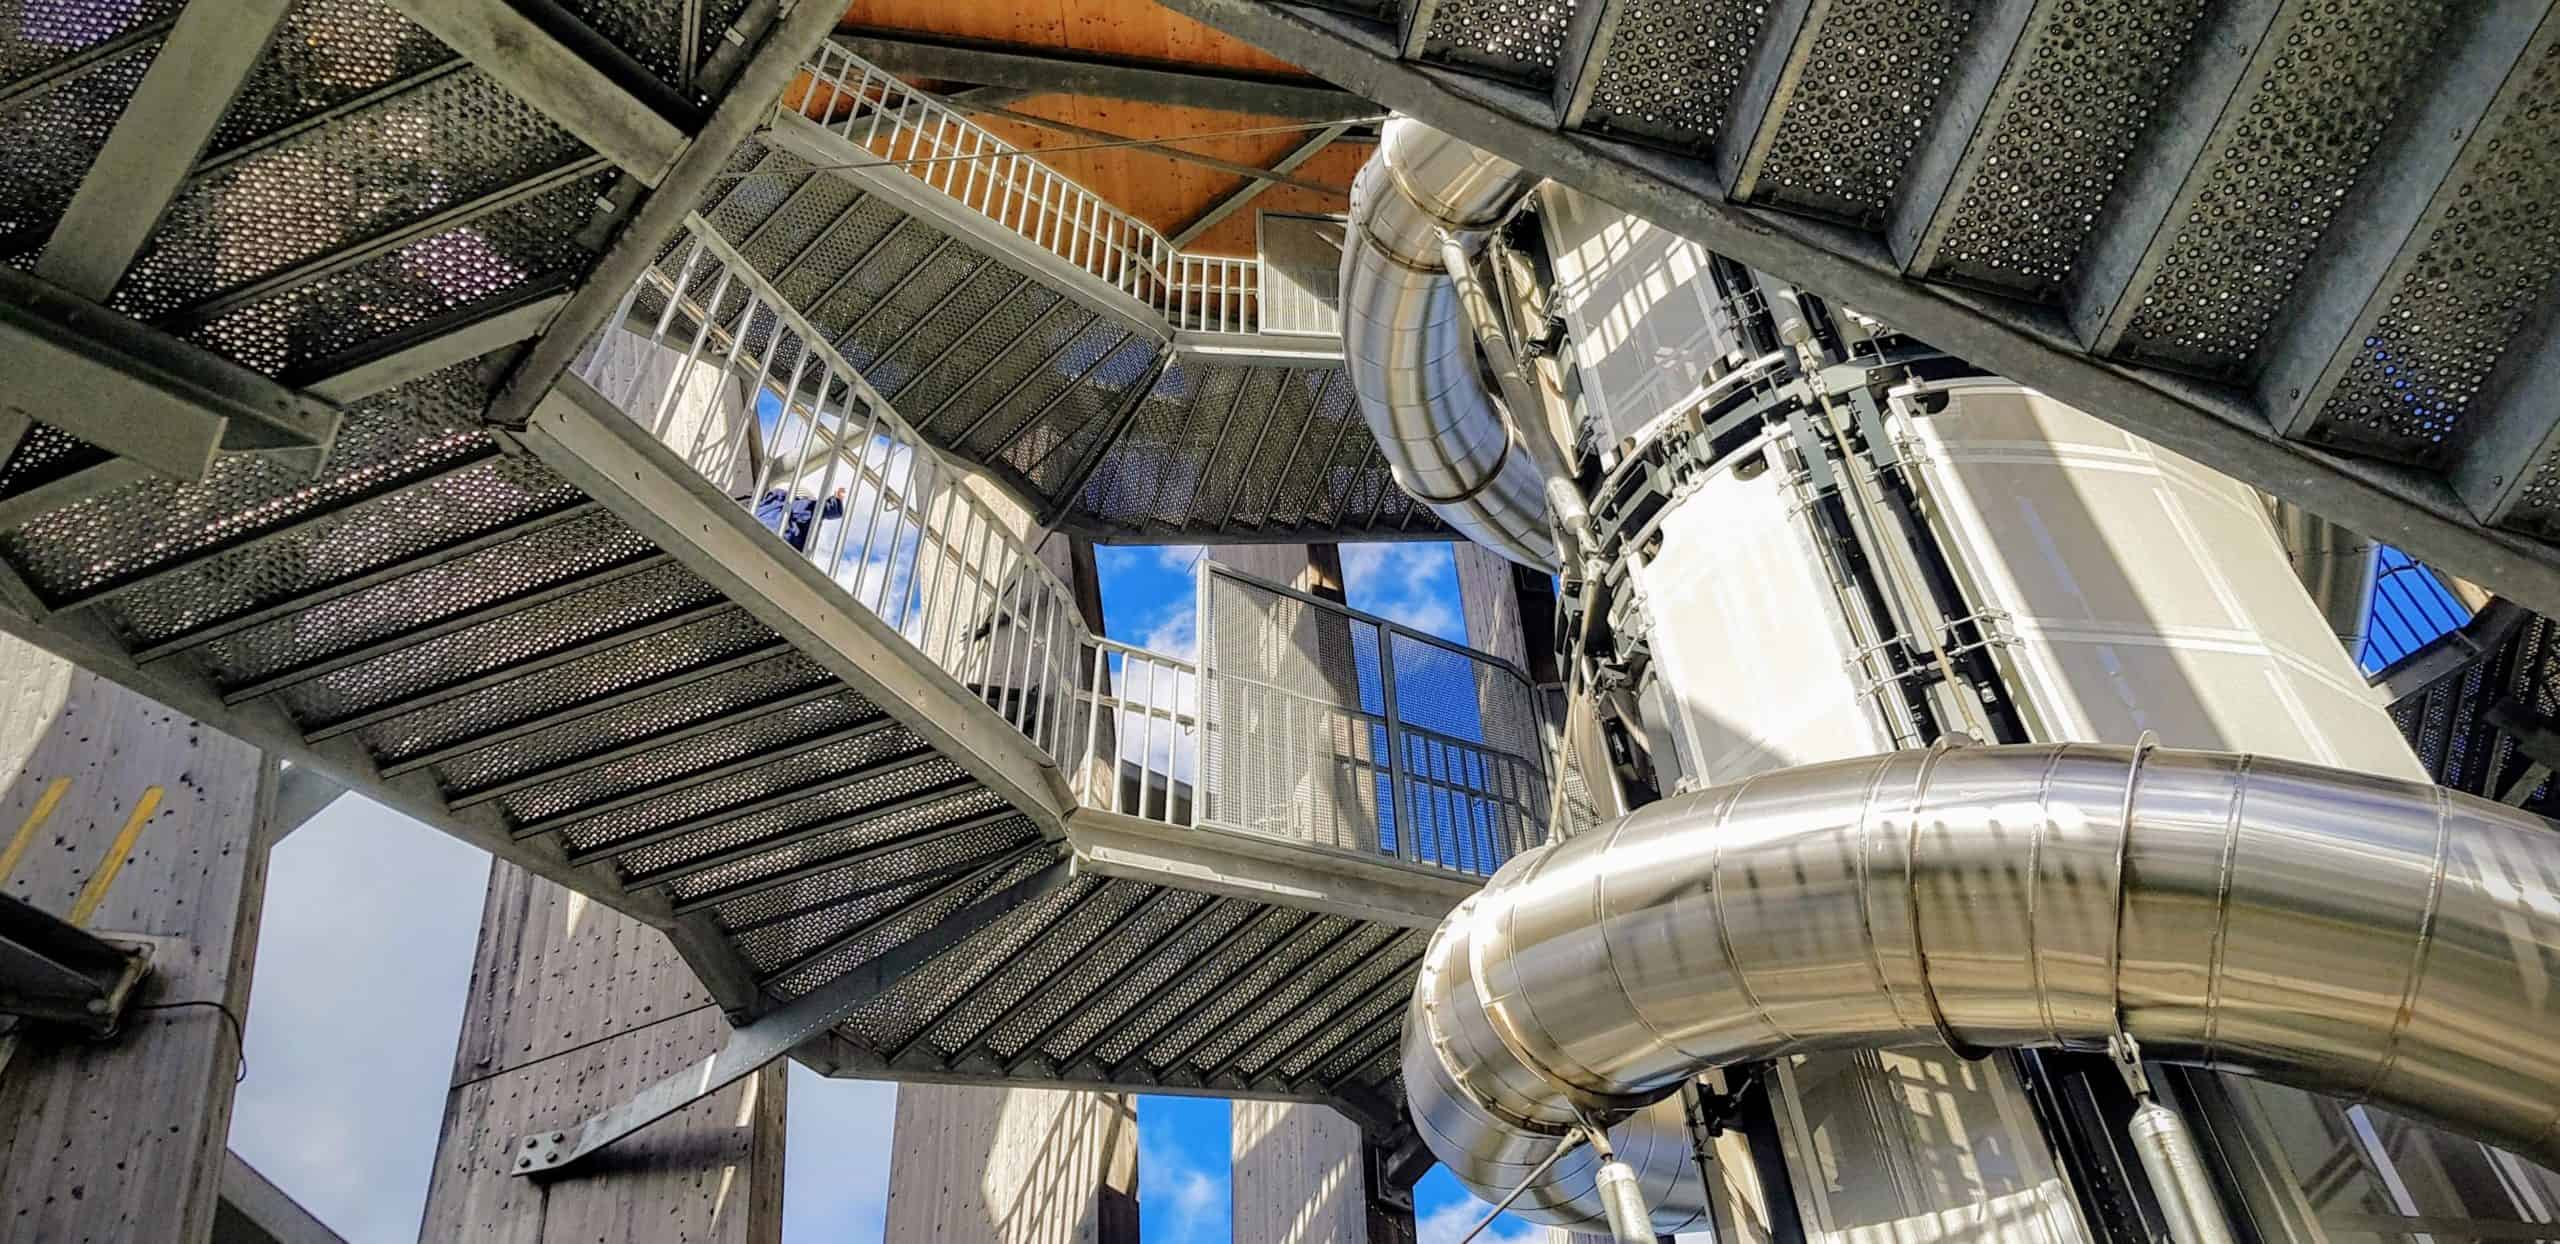 Erlebnisrutsche, Aufzug & Treppe im Inneren des Pyramidenkogels in Kärnten - Sehenswürdigkeit in Österreich.